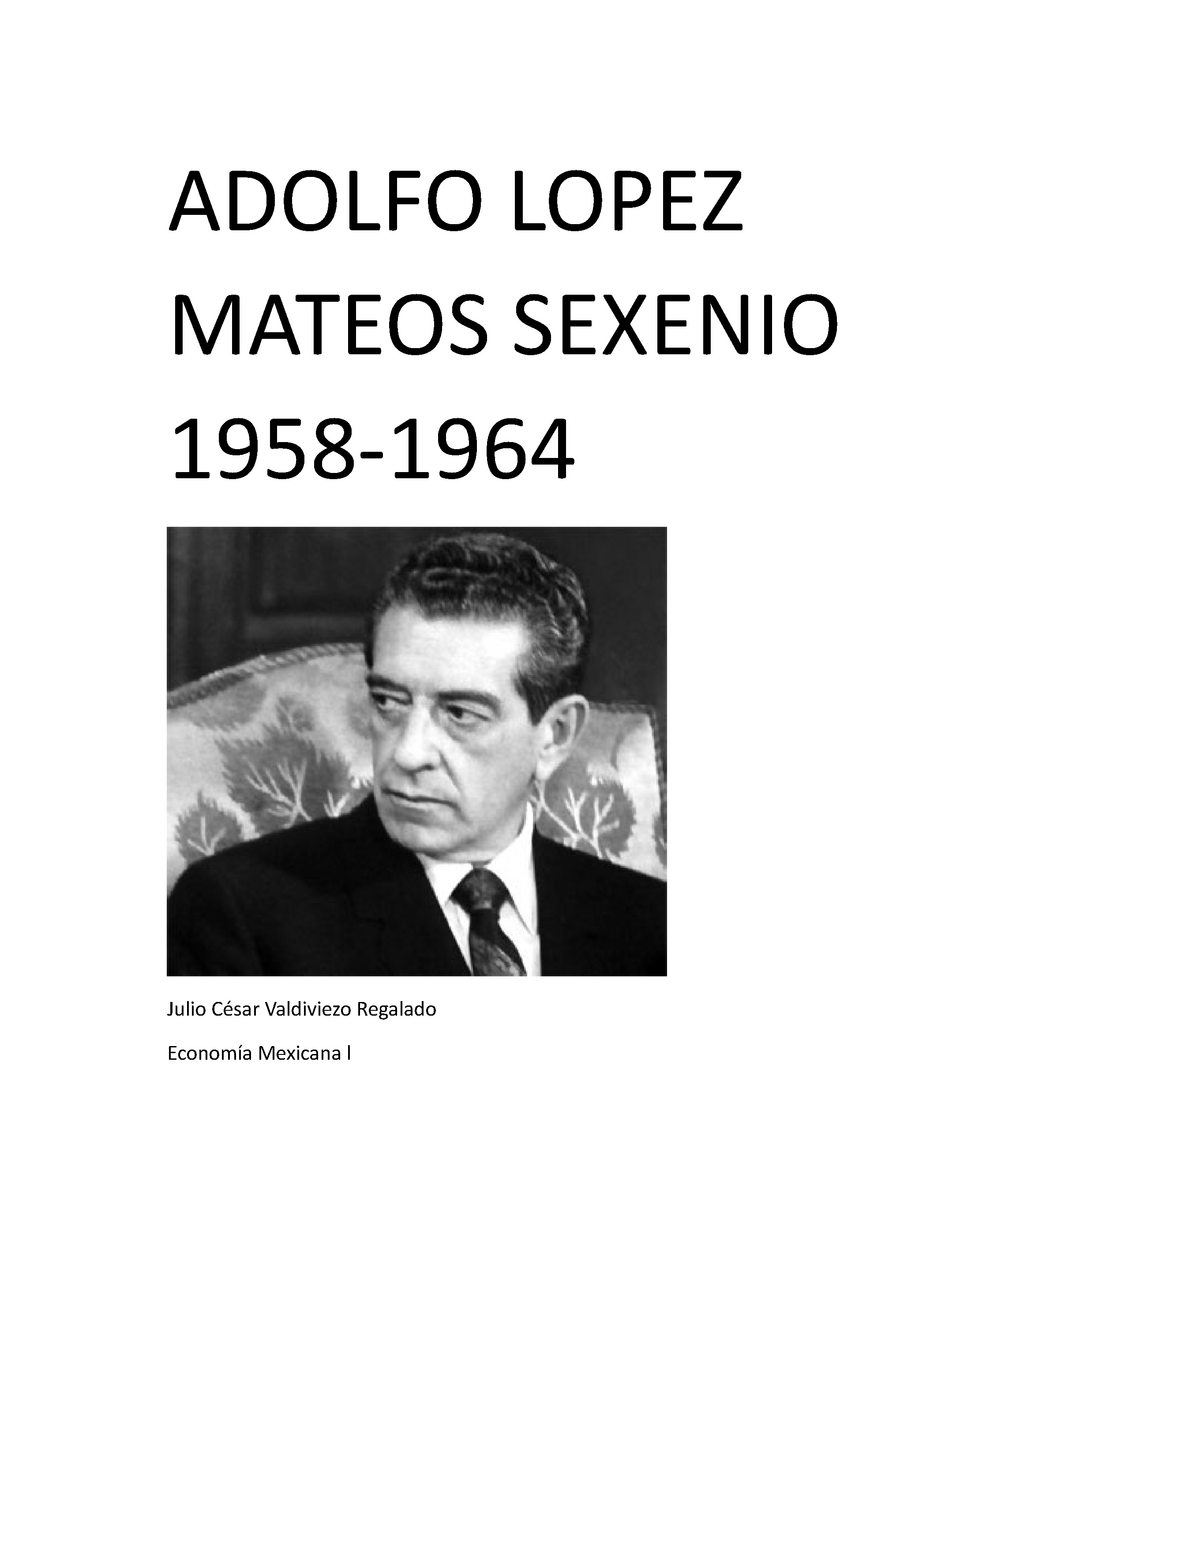 Adolfo Lopez Mateos Ensayo - ADOLFO LOPEZ MATEOS SEXENIO 1958- Julio César  Valdiviezo Regalado - Studocu